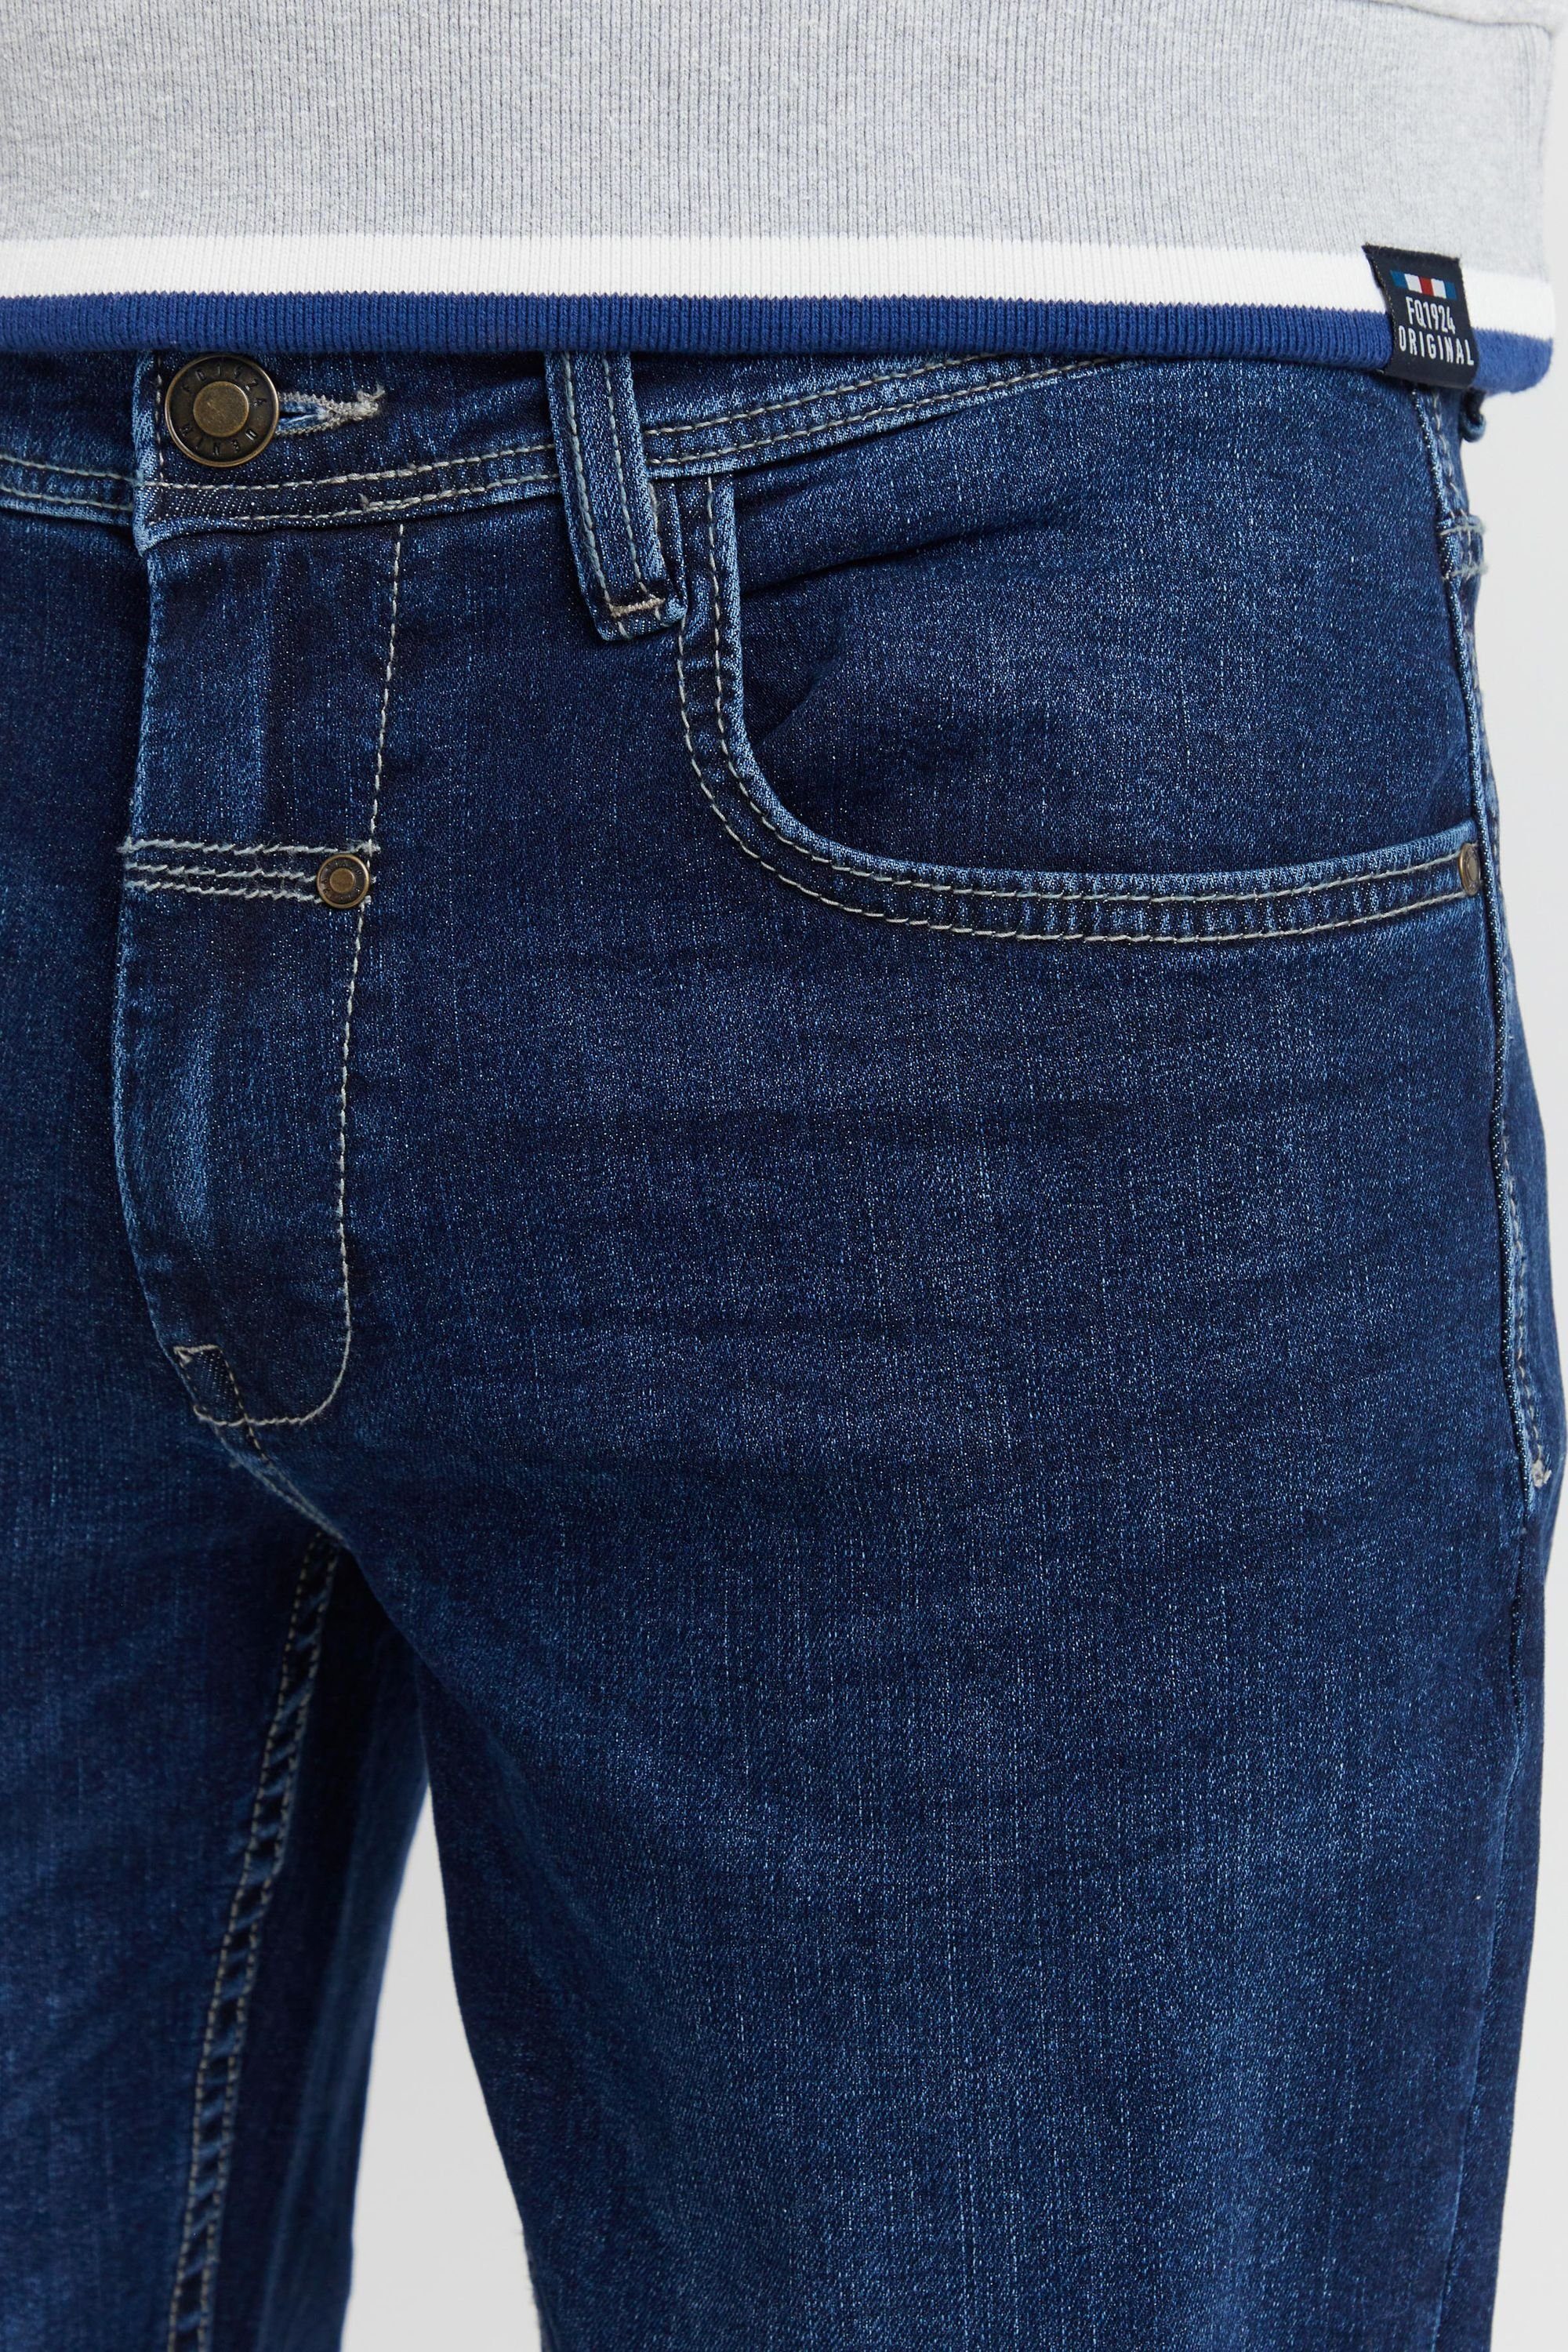 5-Pocket-Jeans FQ1924 Denim FQ1924 blue dark FQRoman